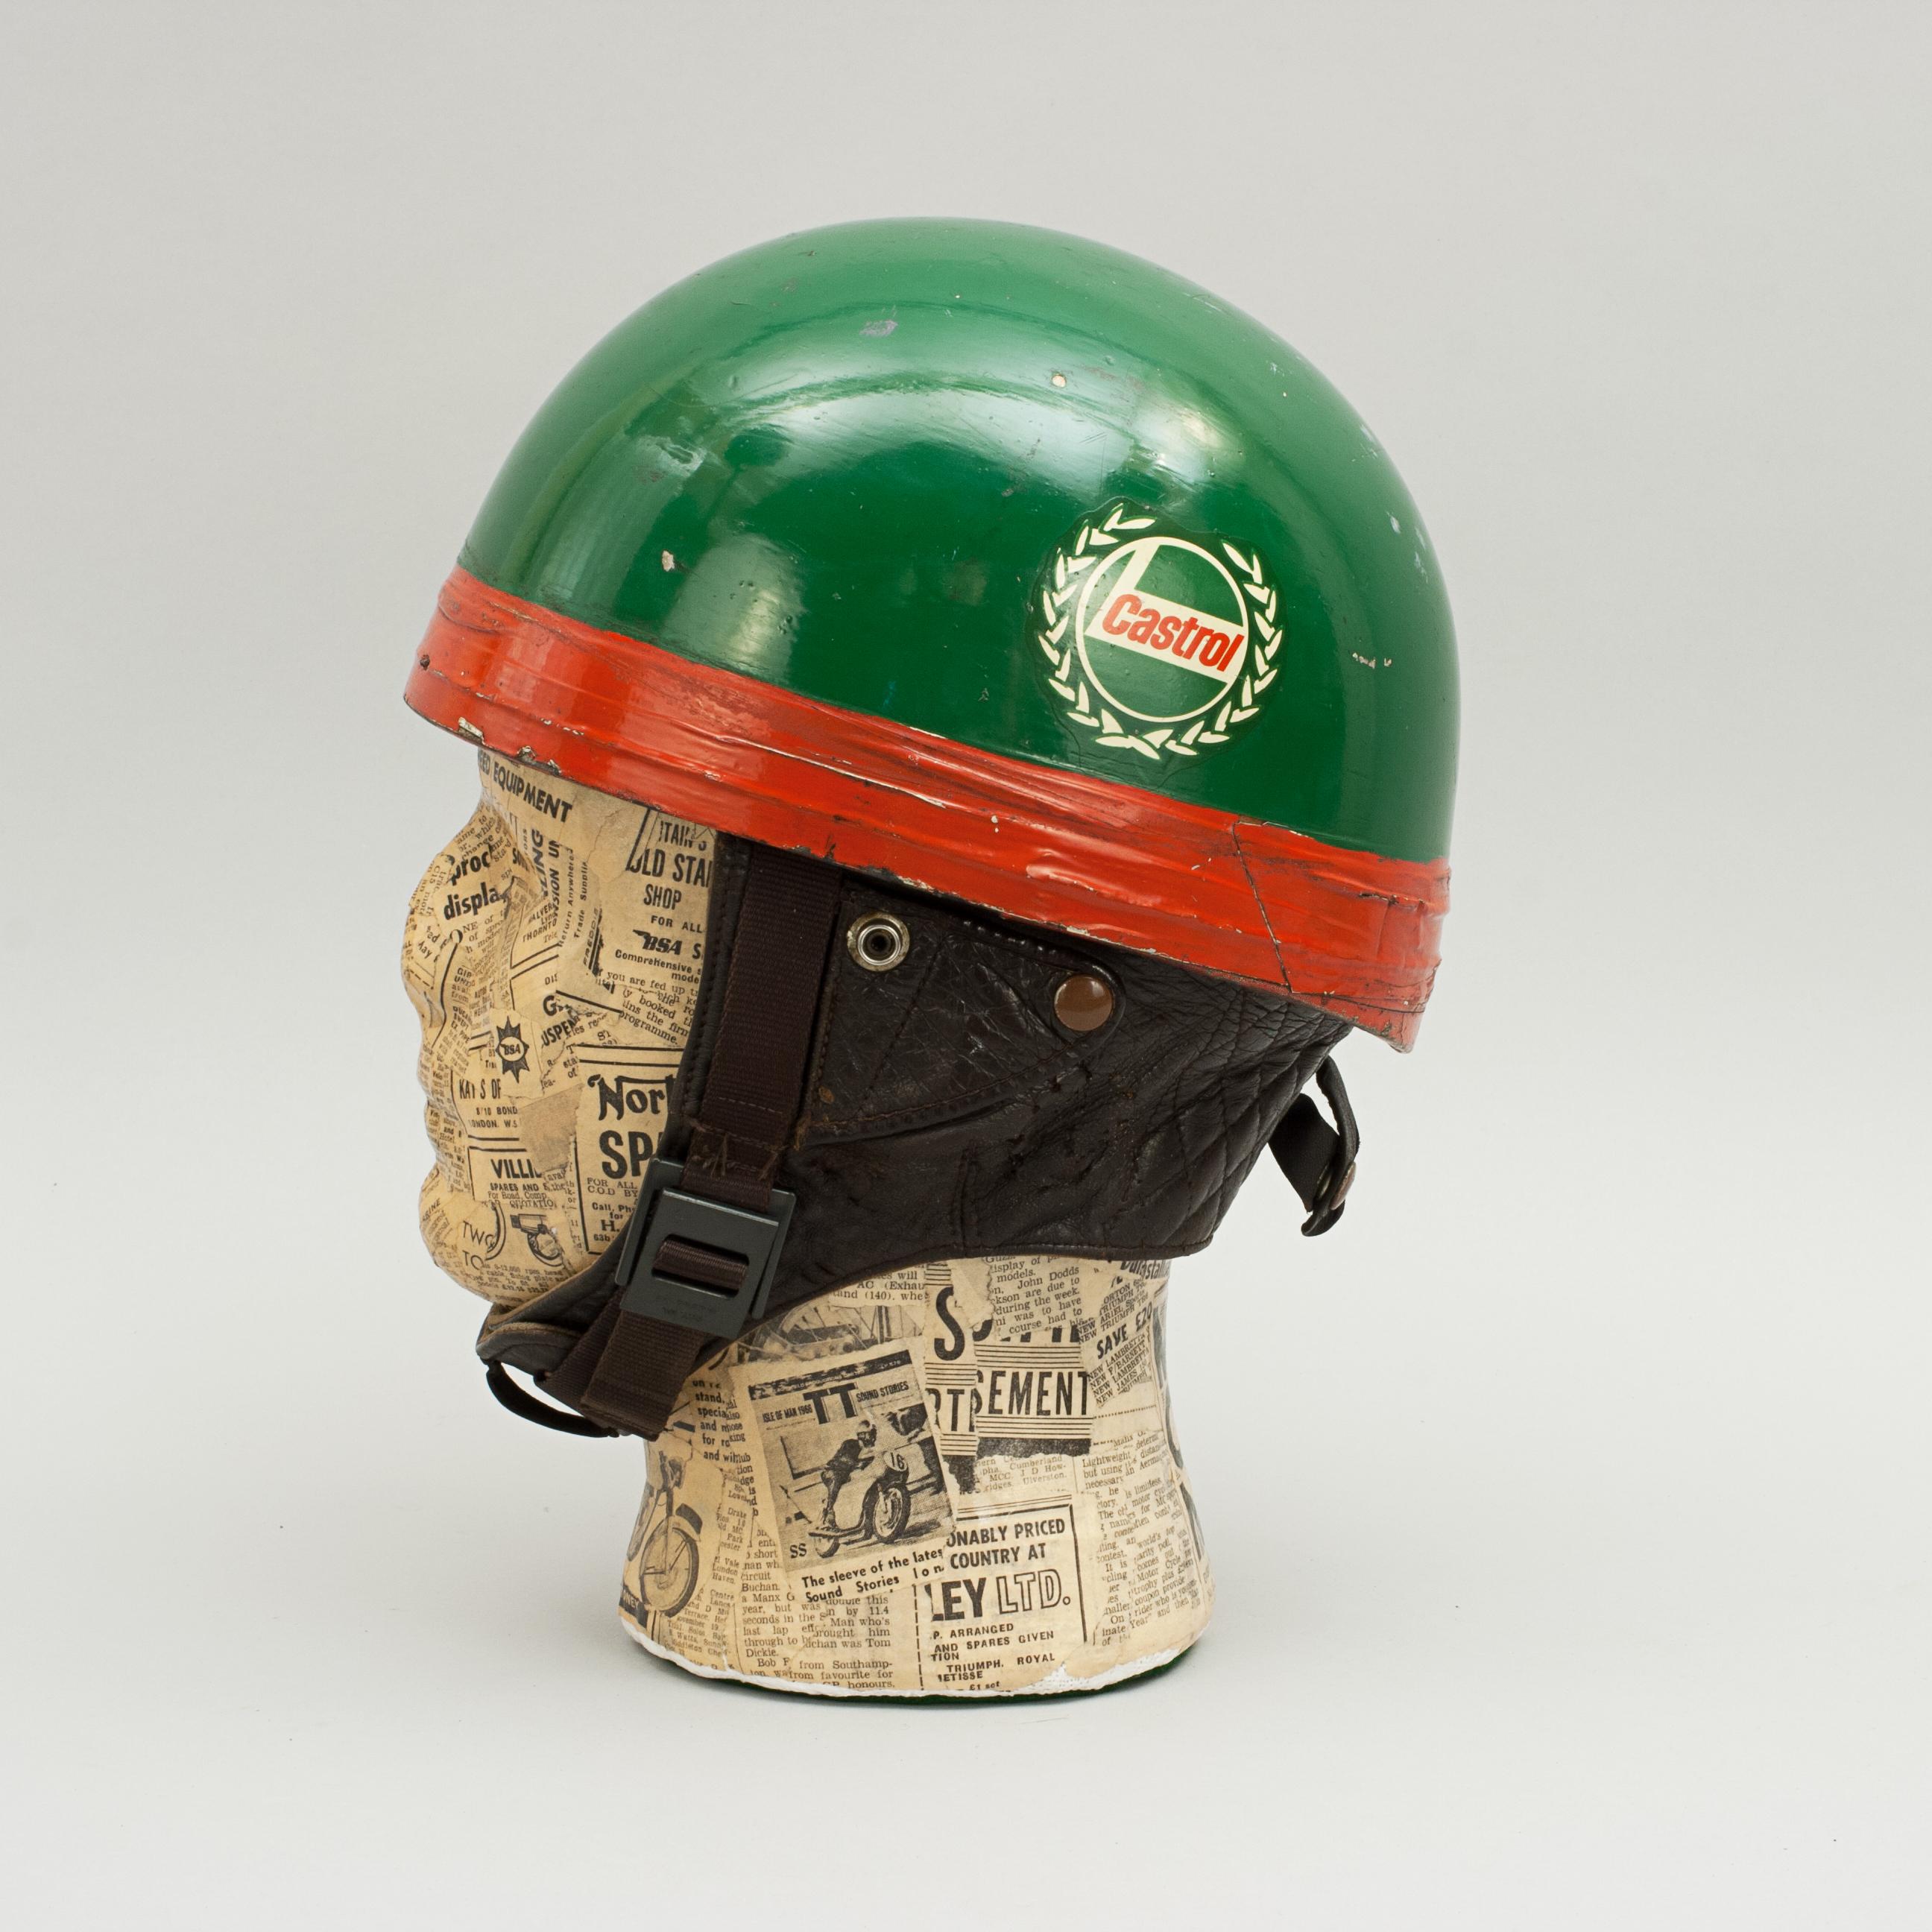 1960s racing helmet